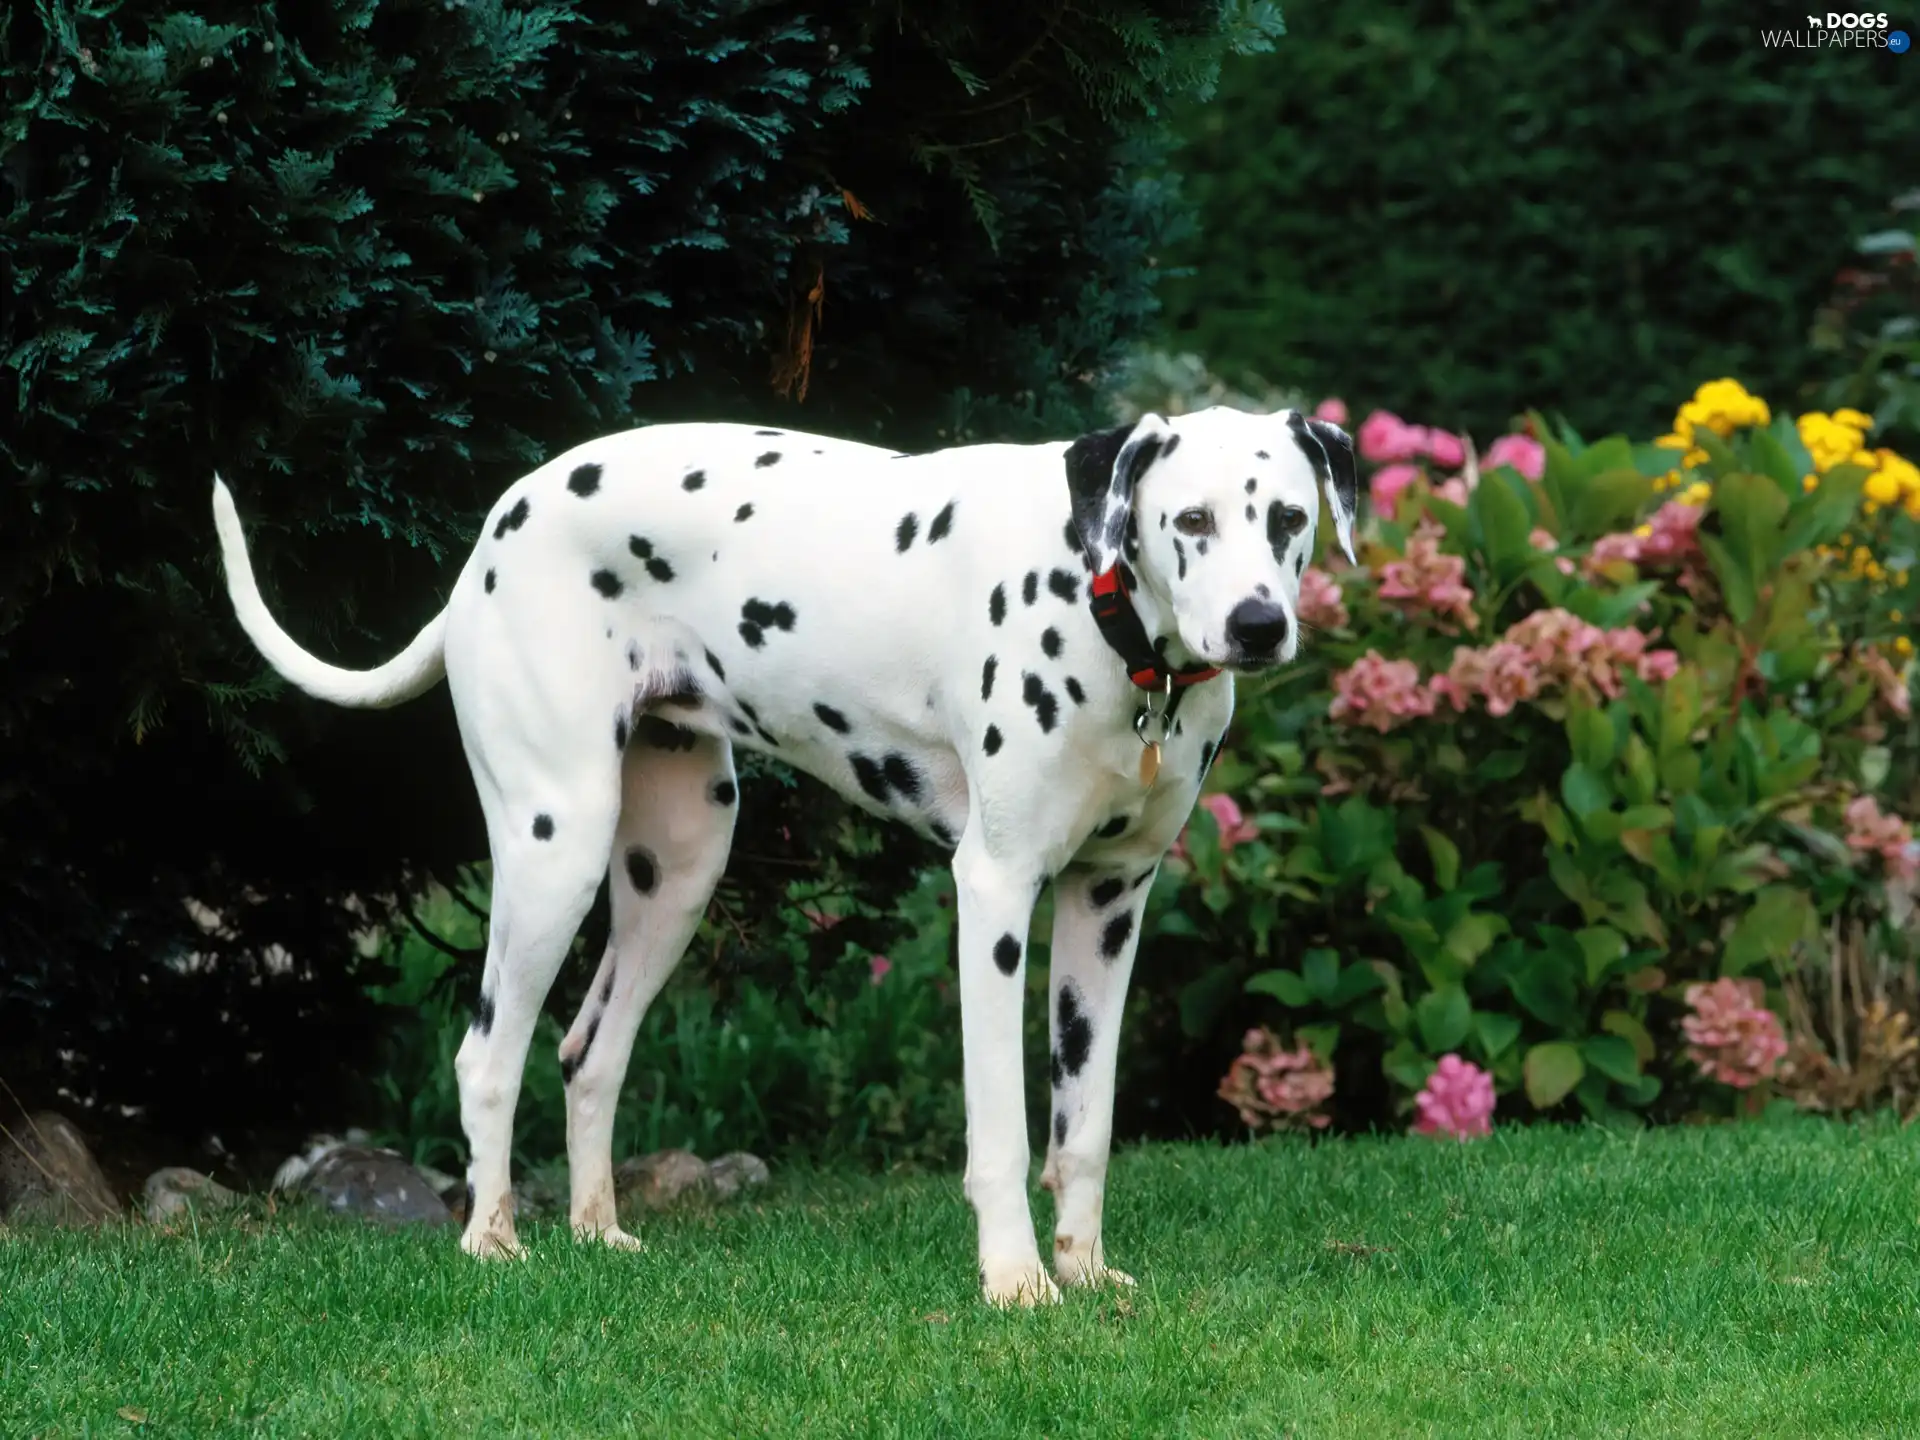 Garden, dog-collar, dog, sapling, Dalmatian